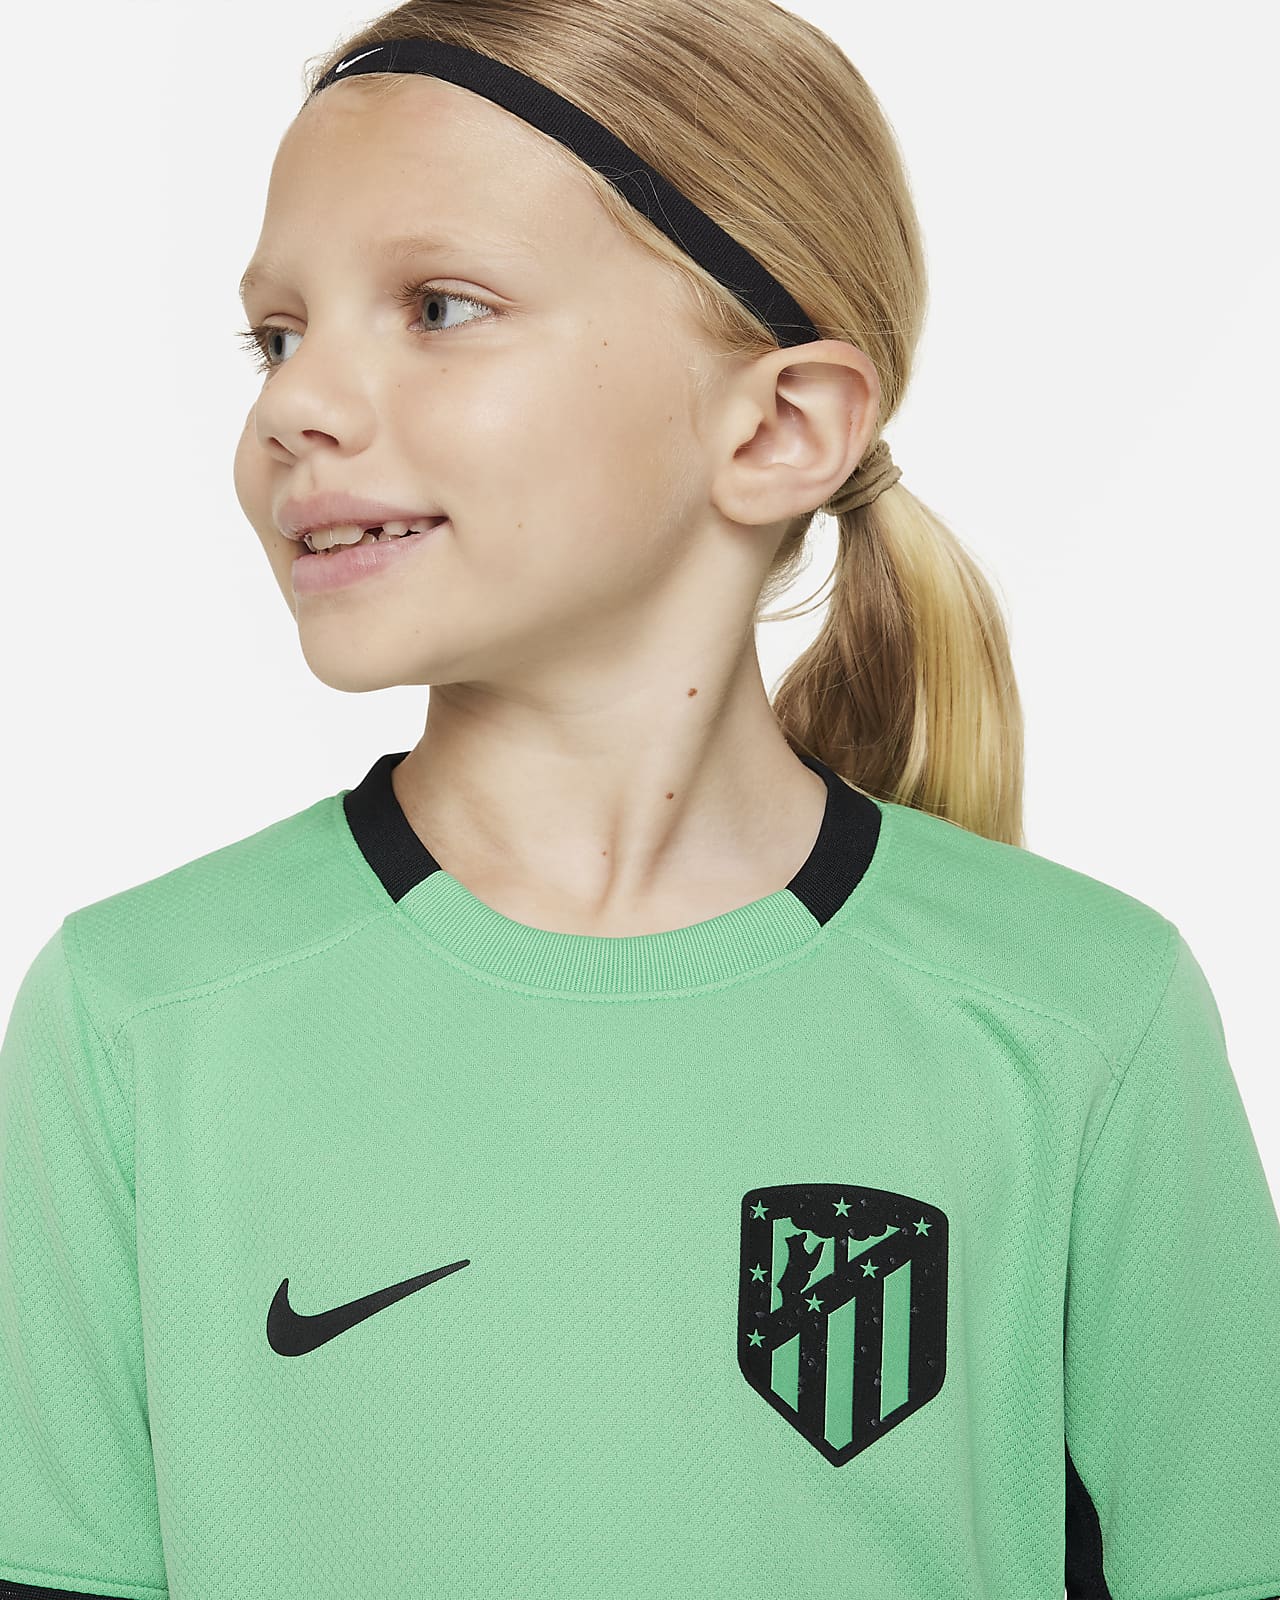 Camiseta Atlético de Madrid Tercera Equipación 23/24 Niño [AMR6403] -  €19.90 